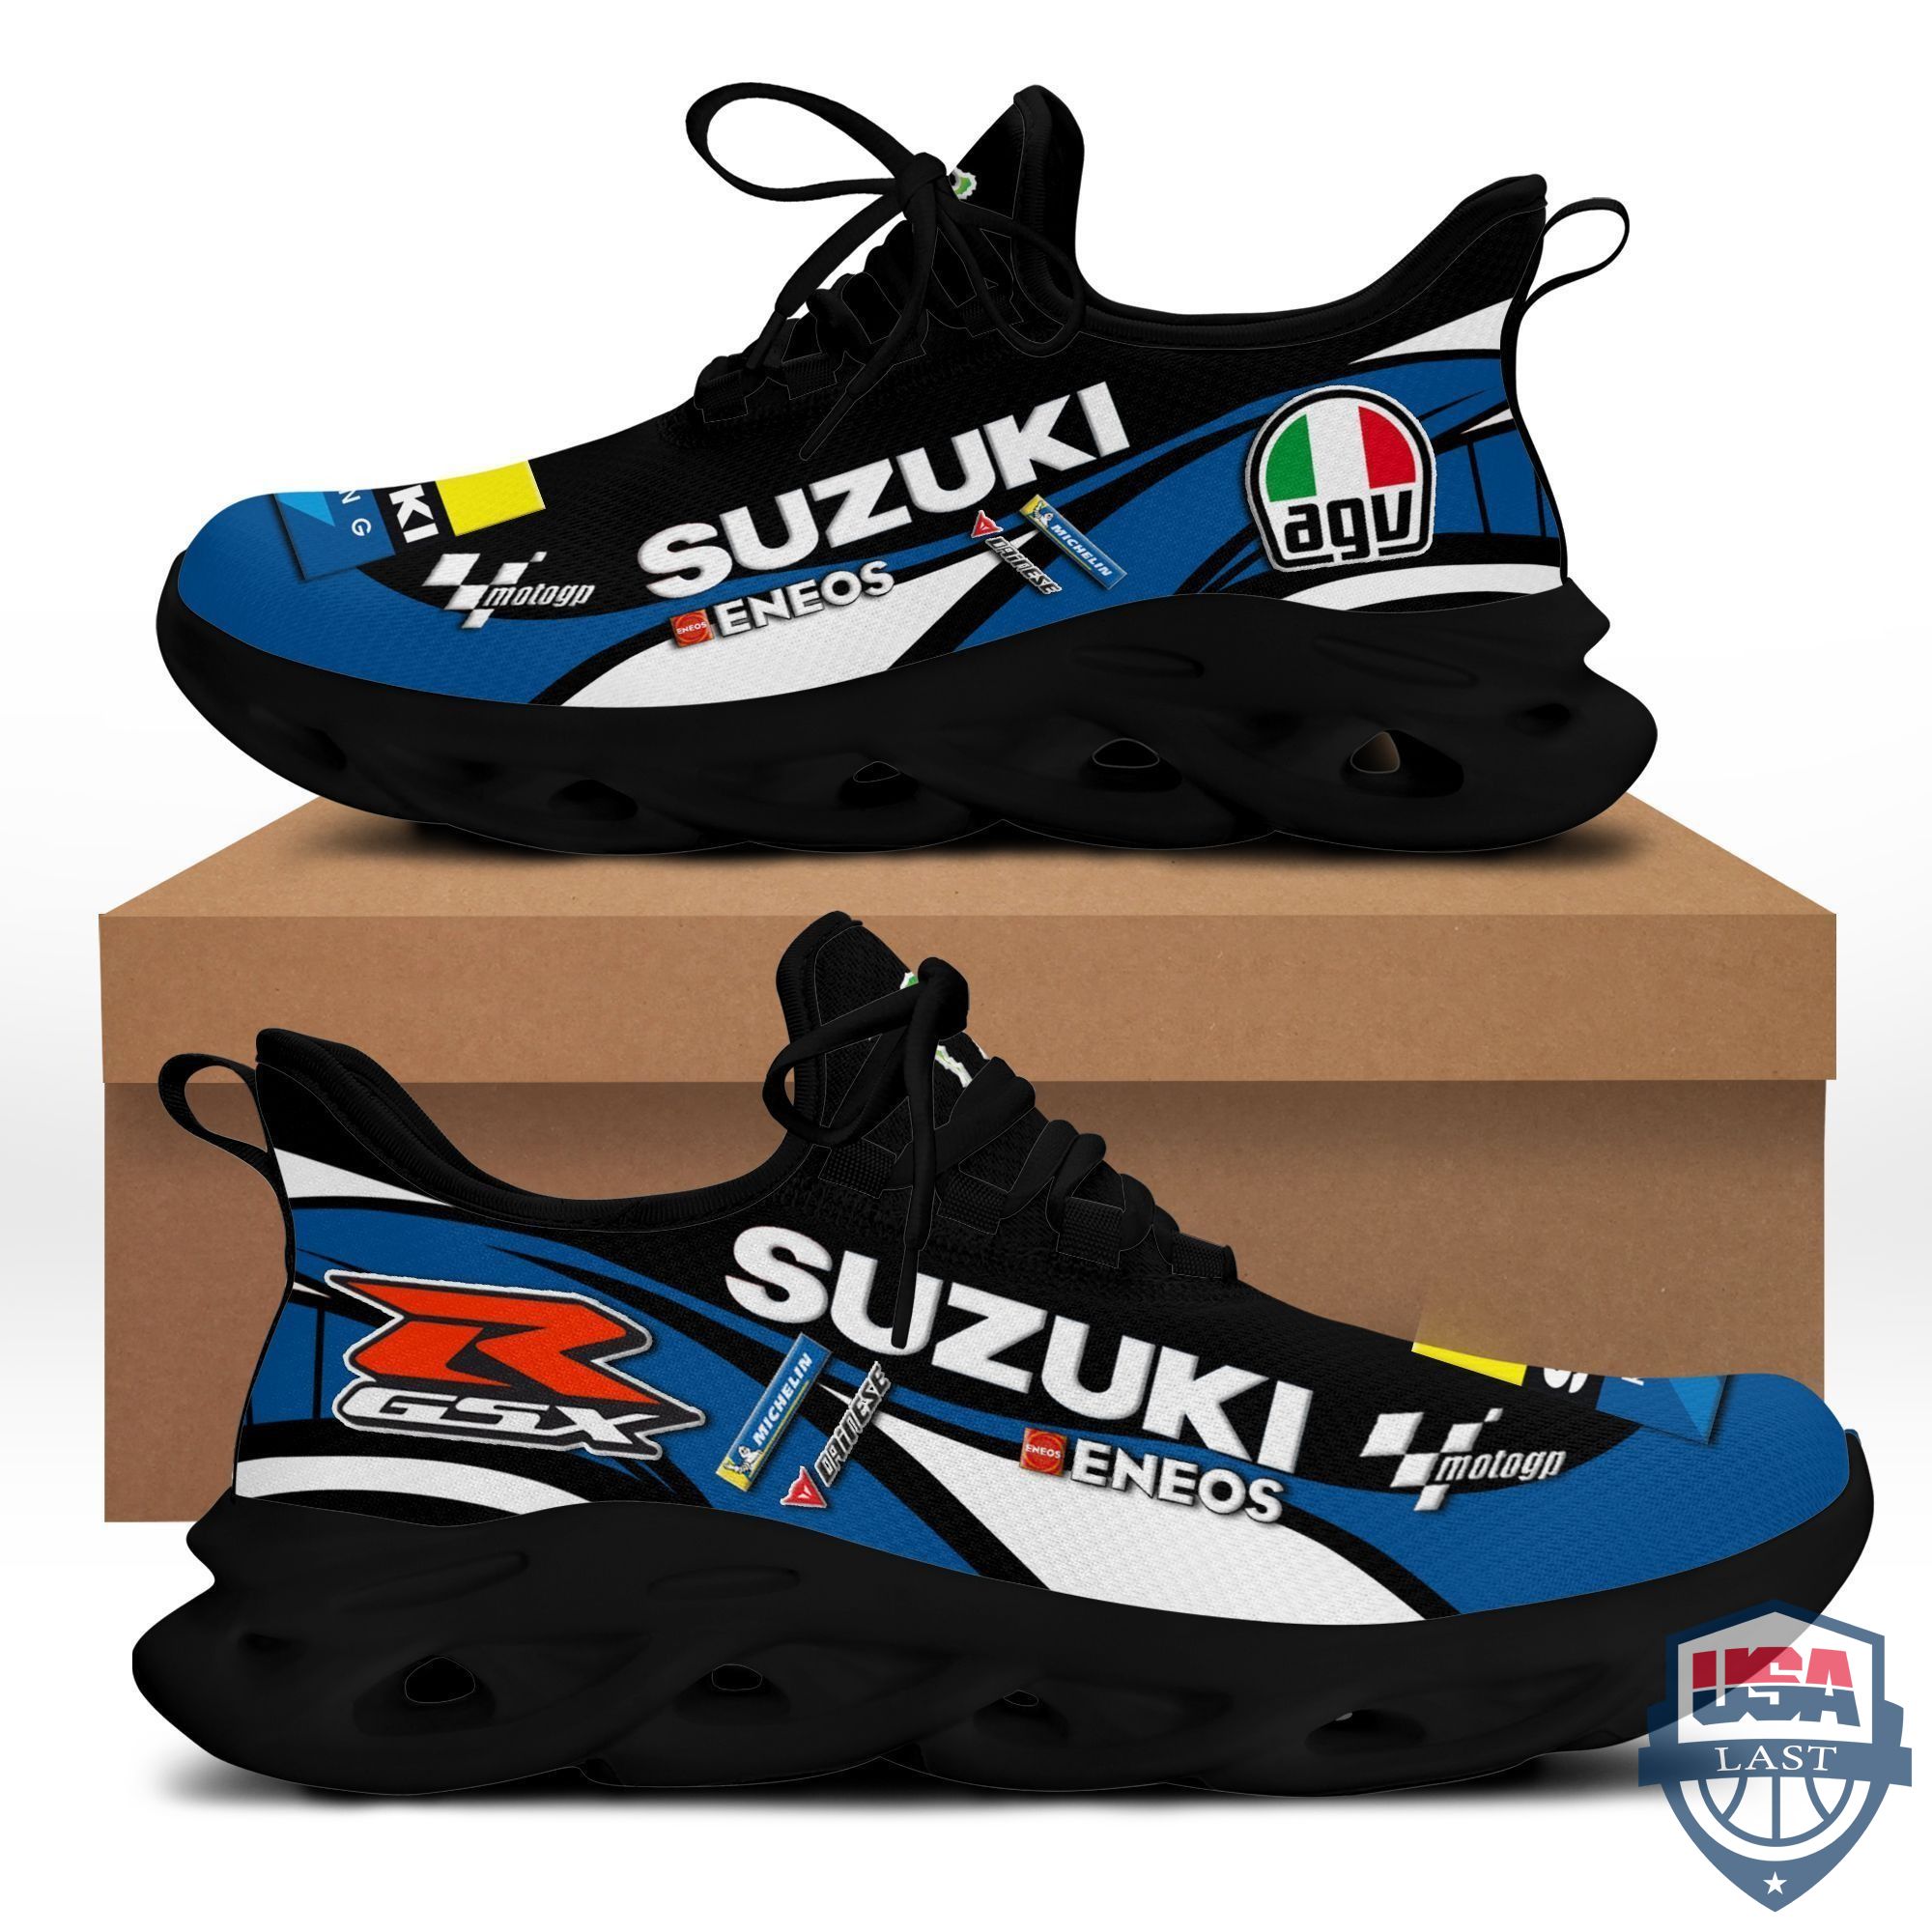 Suzuki Racing Blue Sneaker Max Soul Shoes  For Men, Women